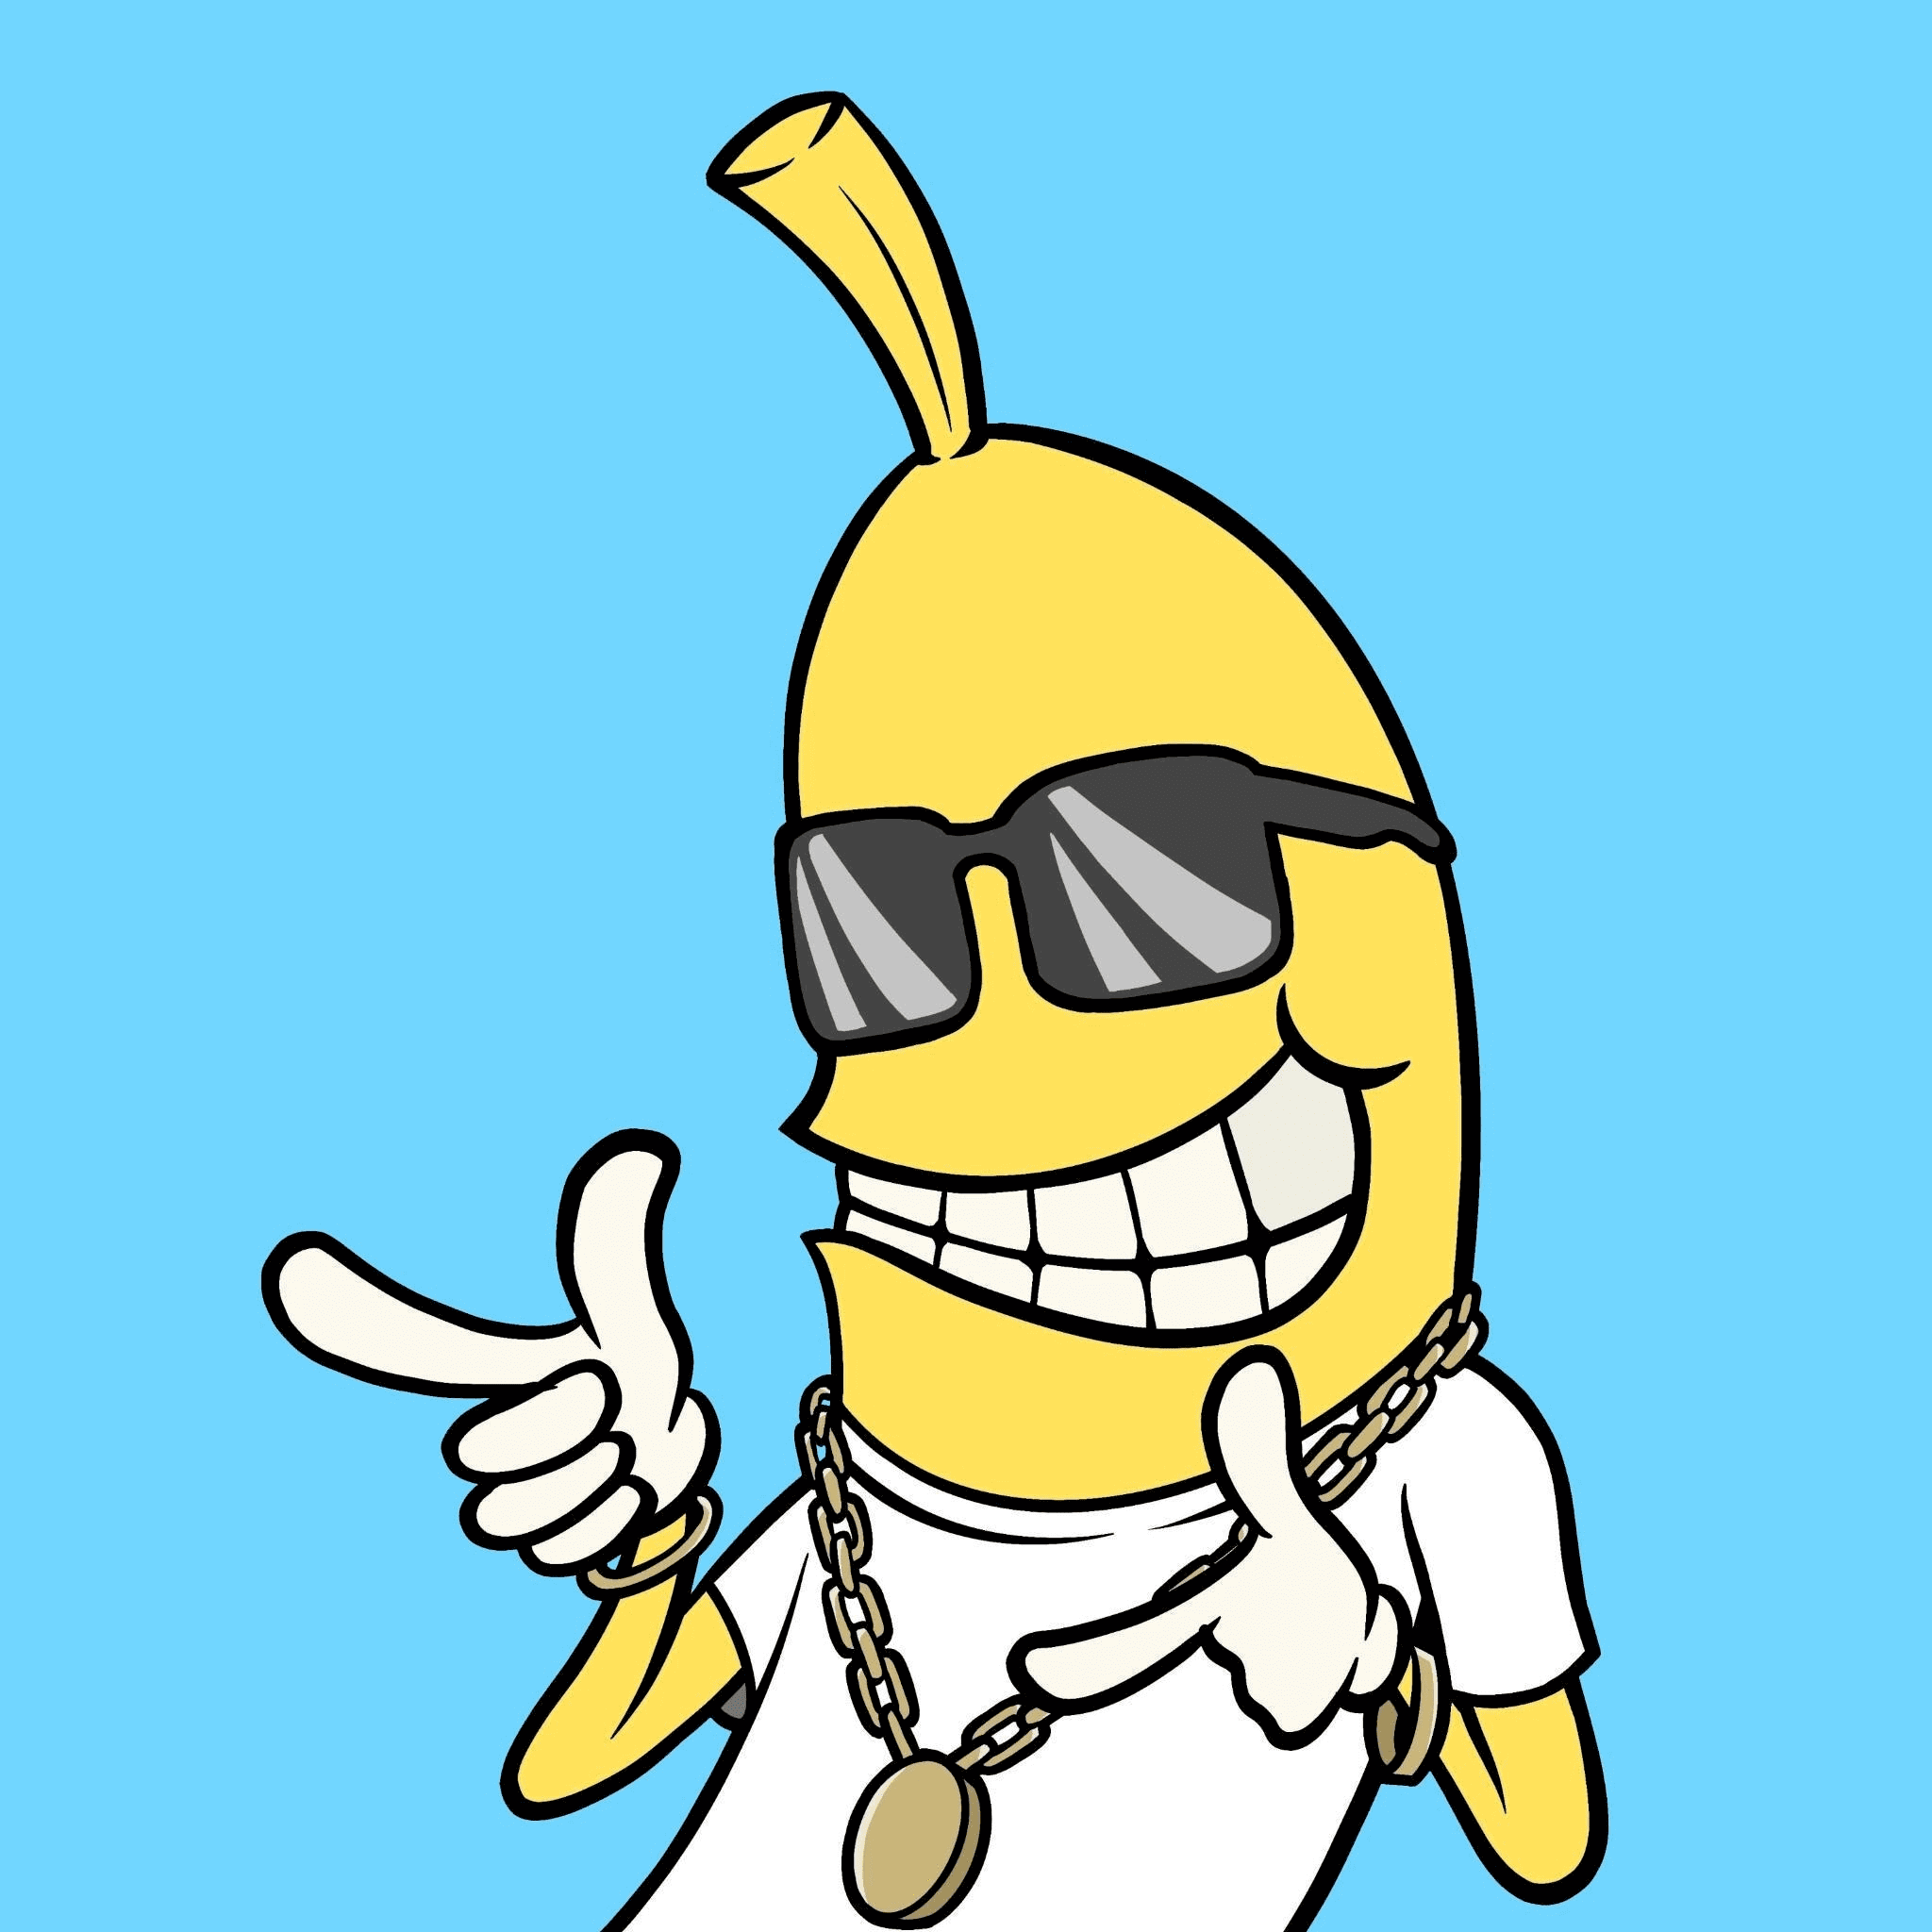 Banana Solana Token